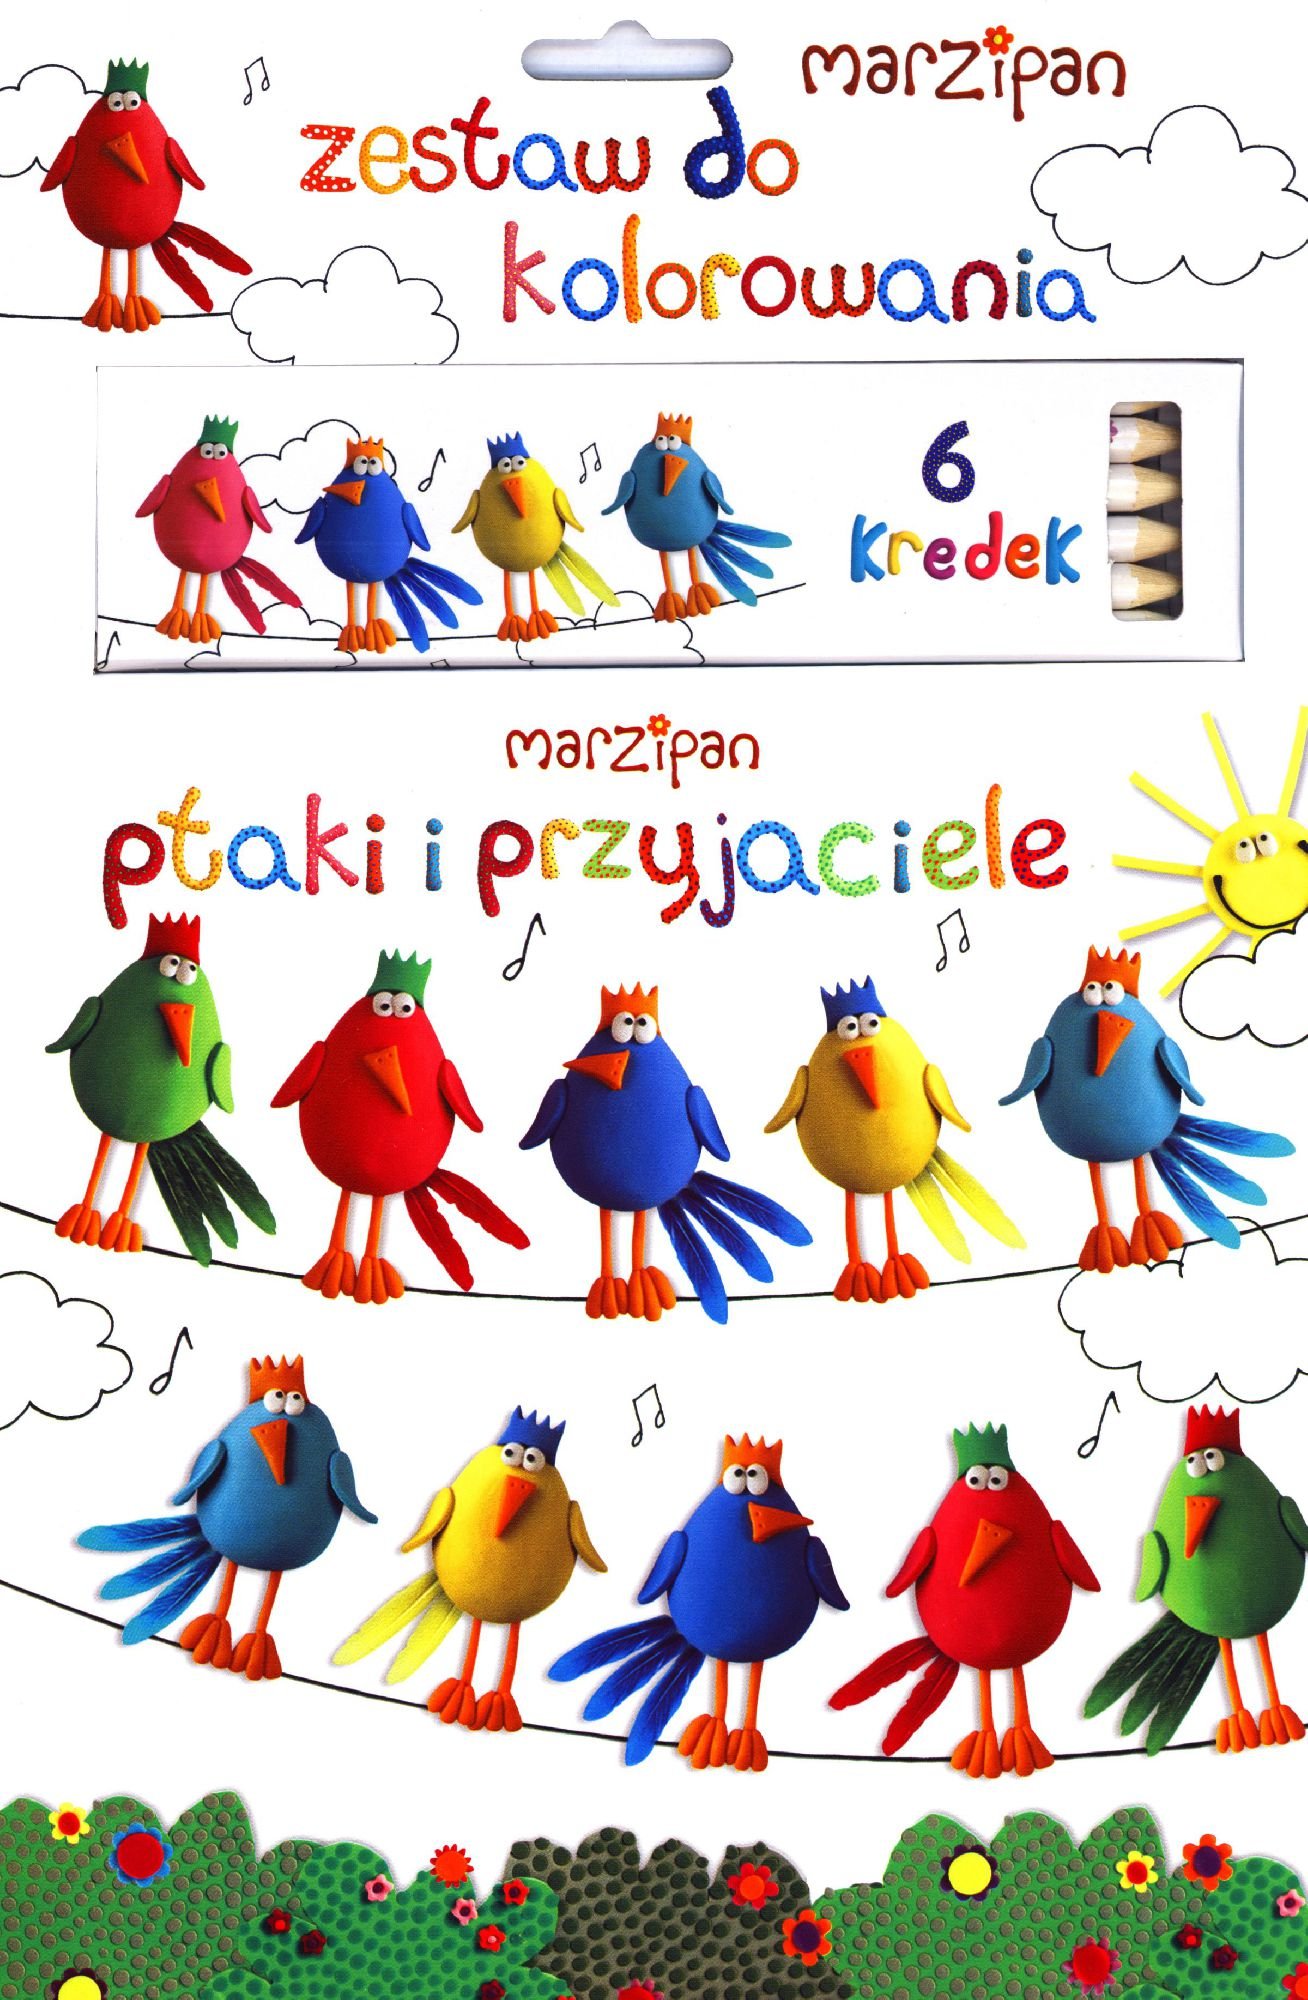 Marţipan. Păsări și prieteni + creioane colorate (86311)